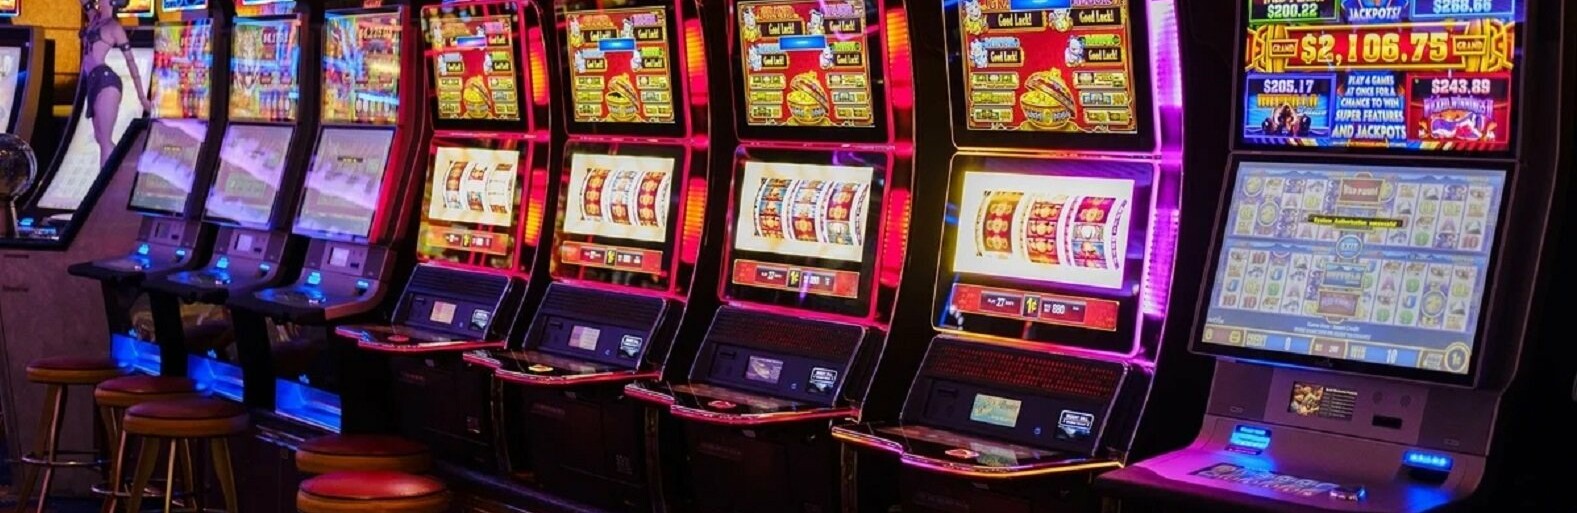 Игровые автоматы сзао москвы стратегия ставок лотереи